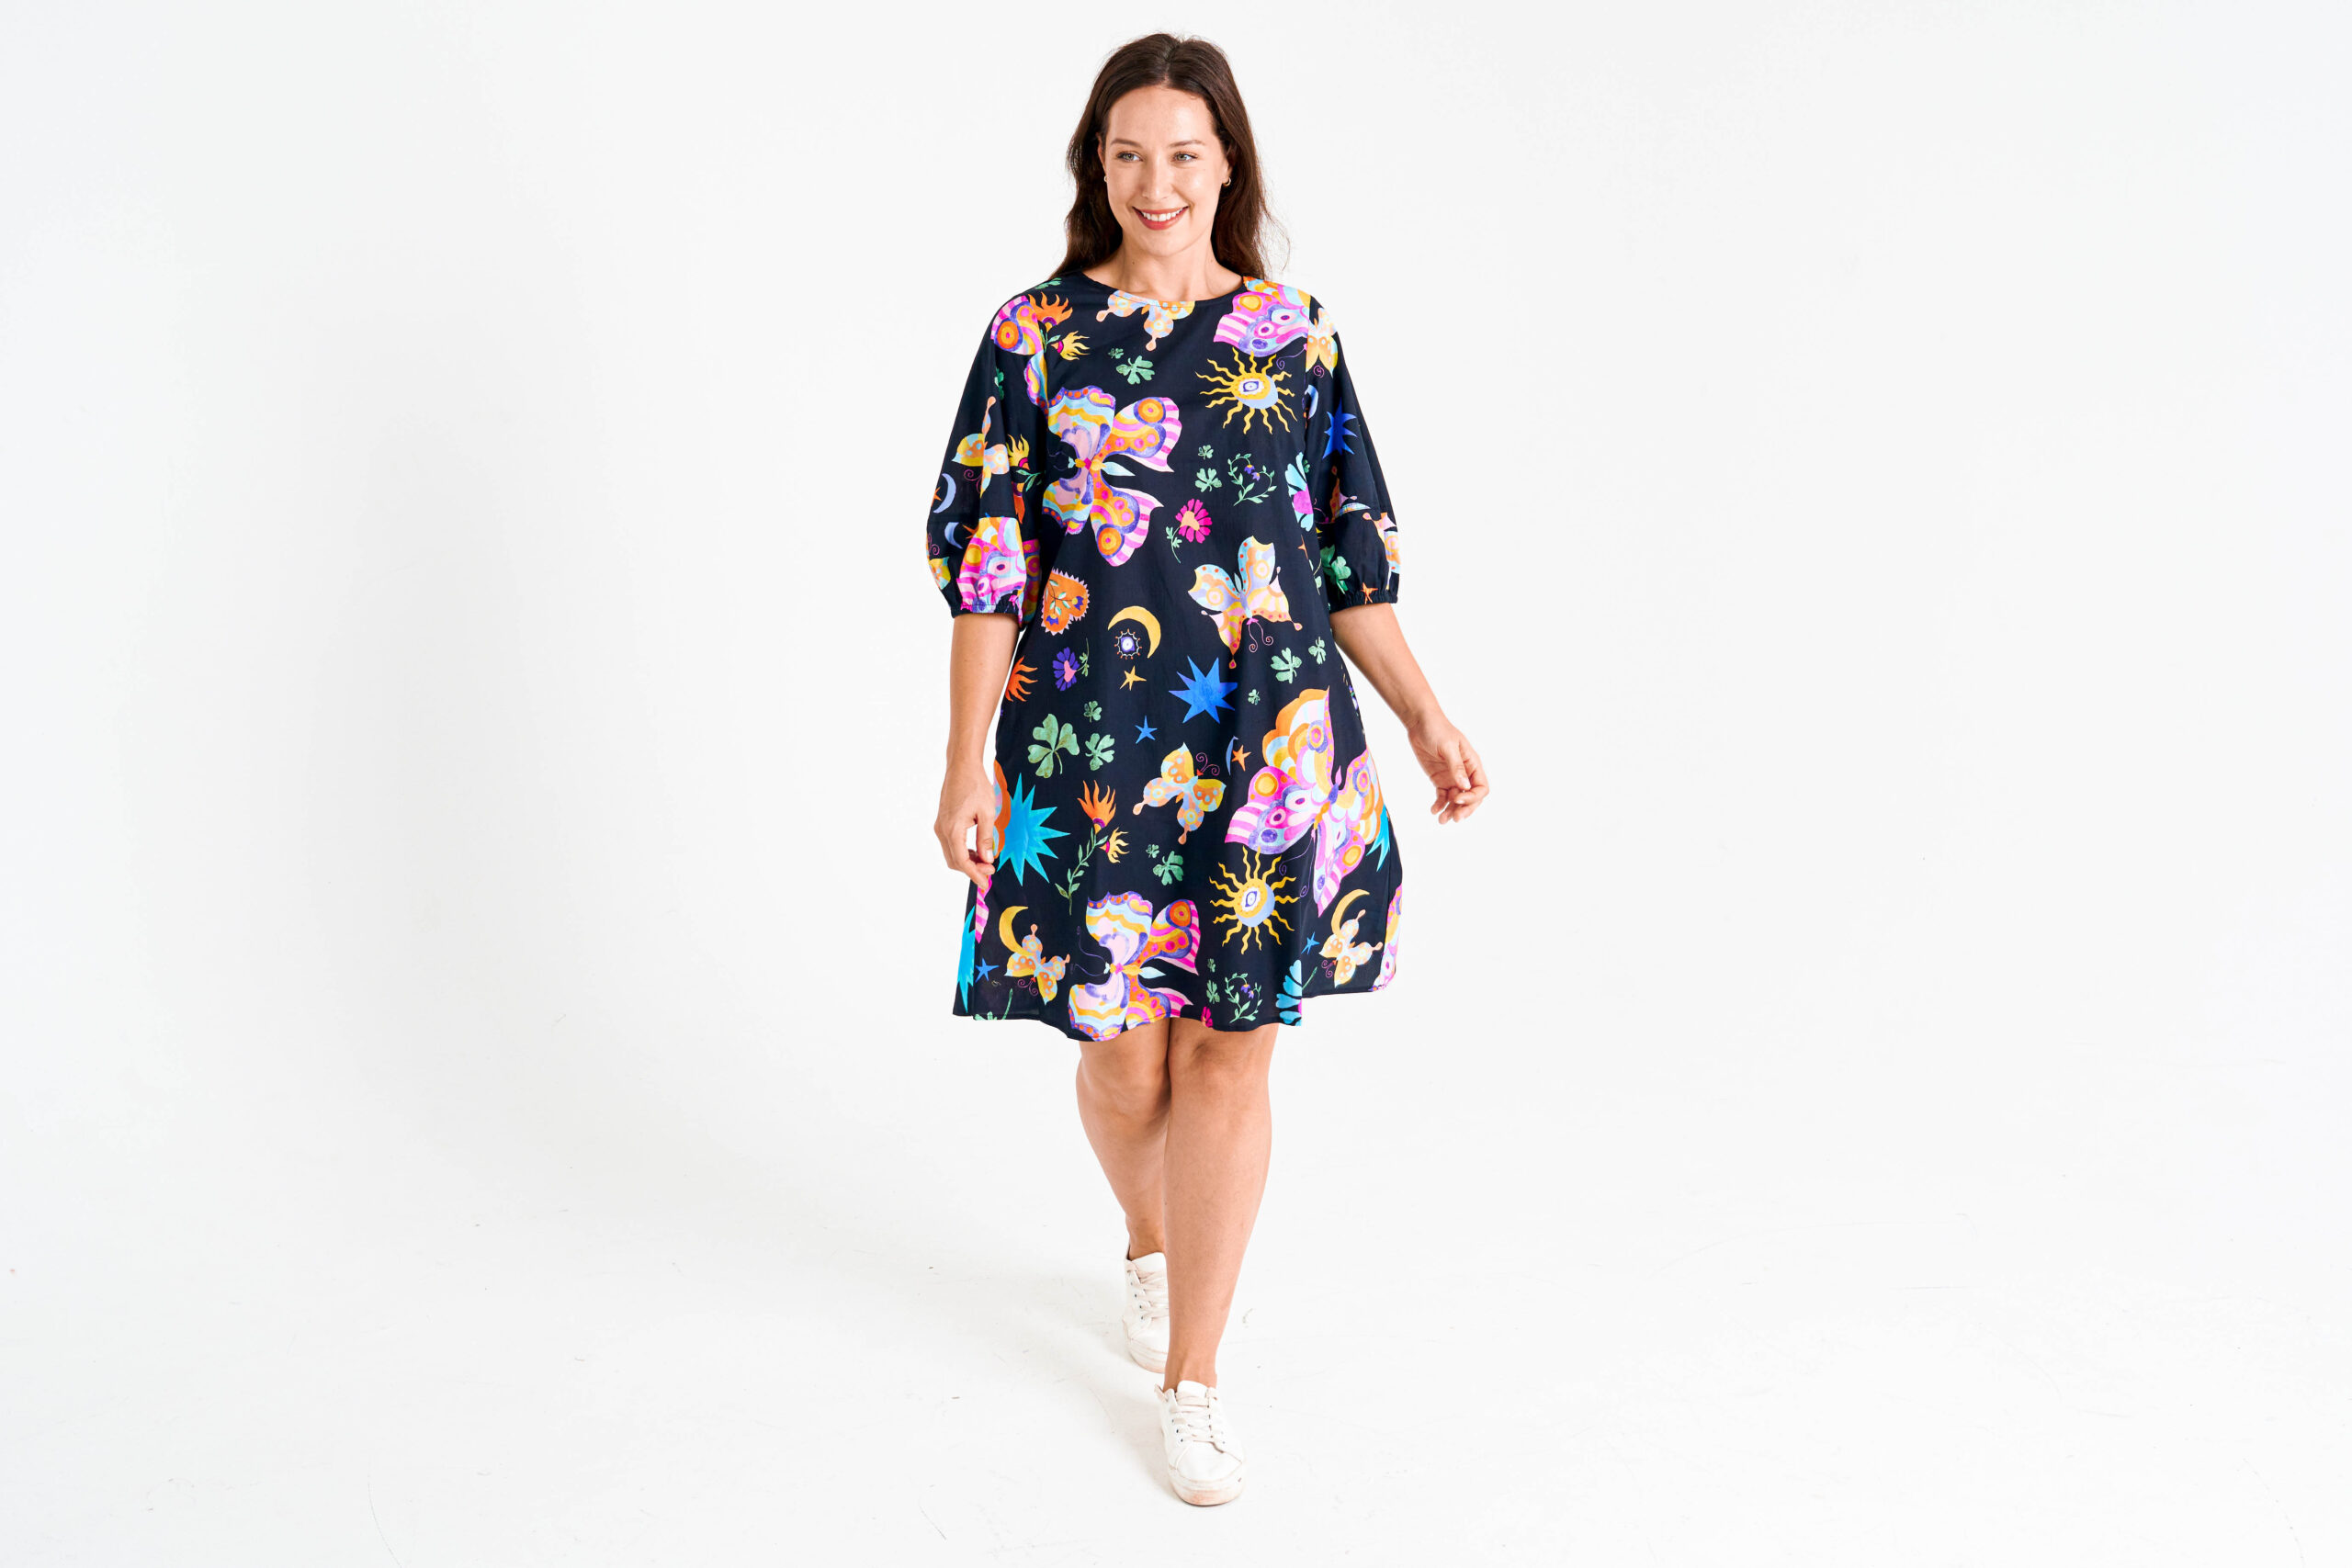 Sydney Premier Women's Clothes & Dresses Wholesale Supplier